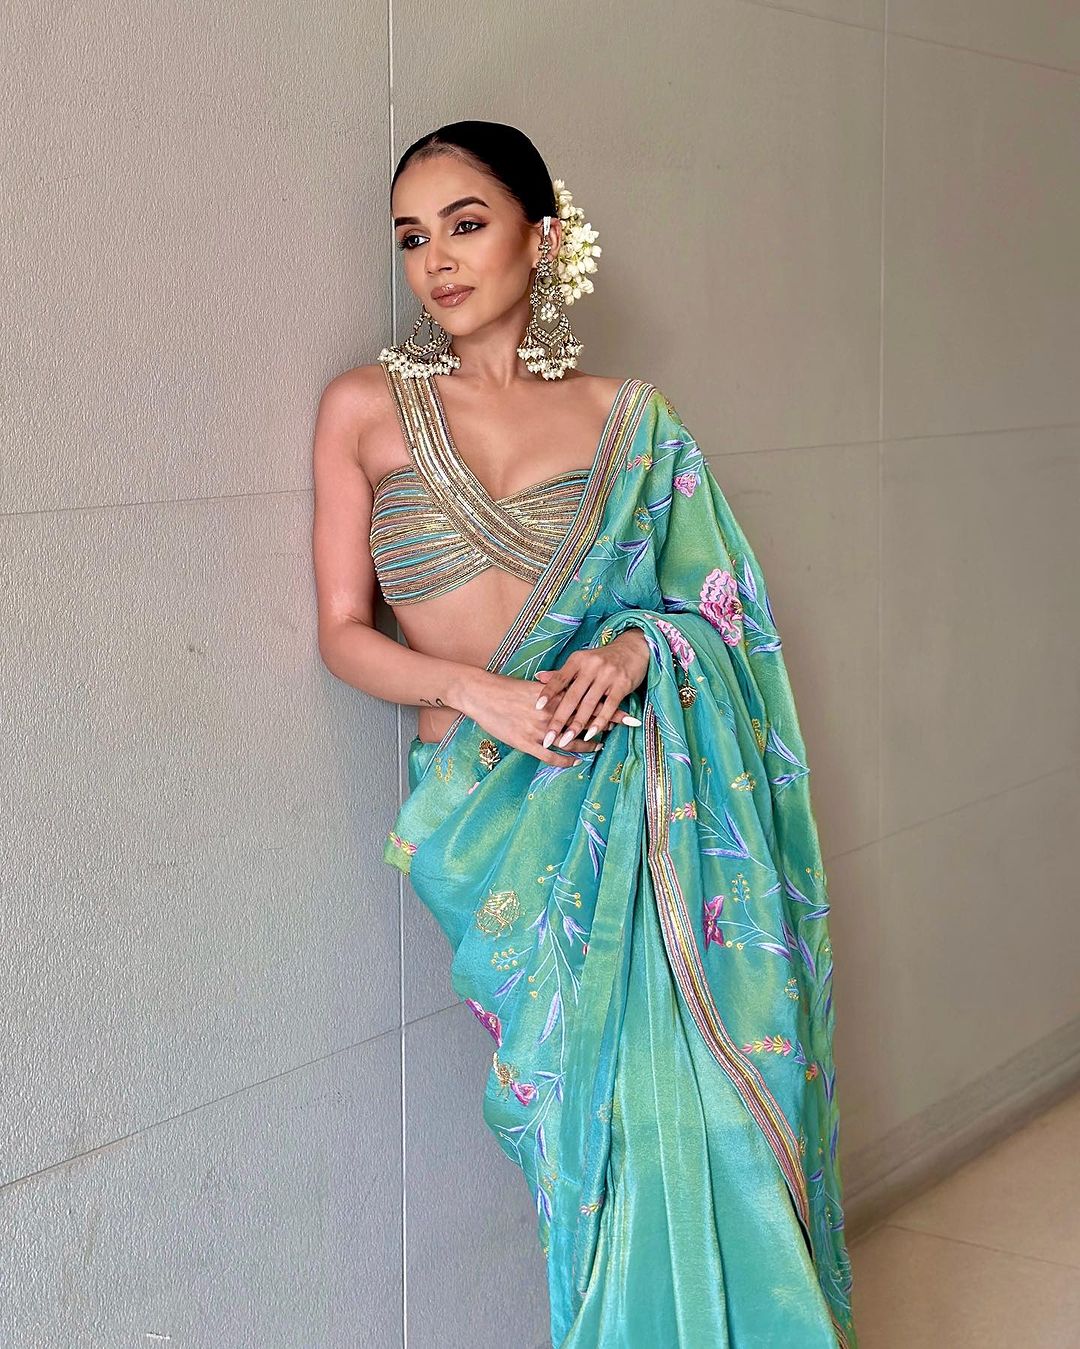 Komal Pandey Looks Like a Dream in an Aqua Silk Tissue Sari